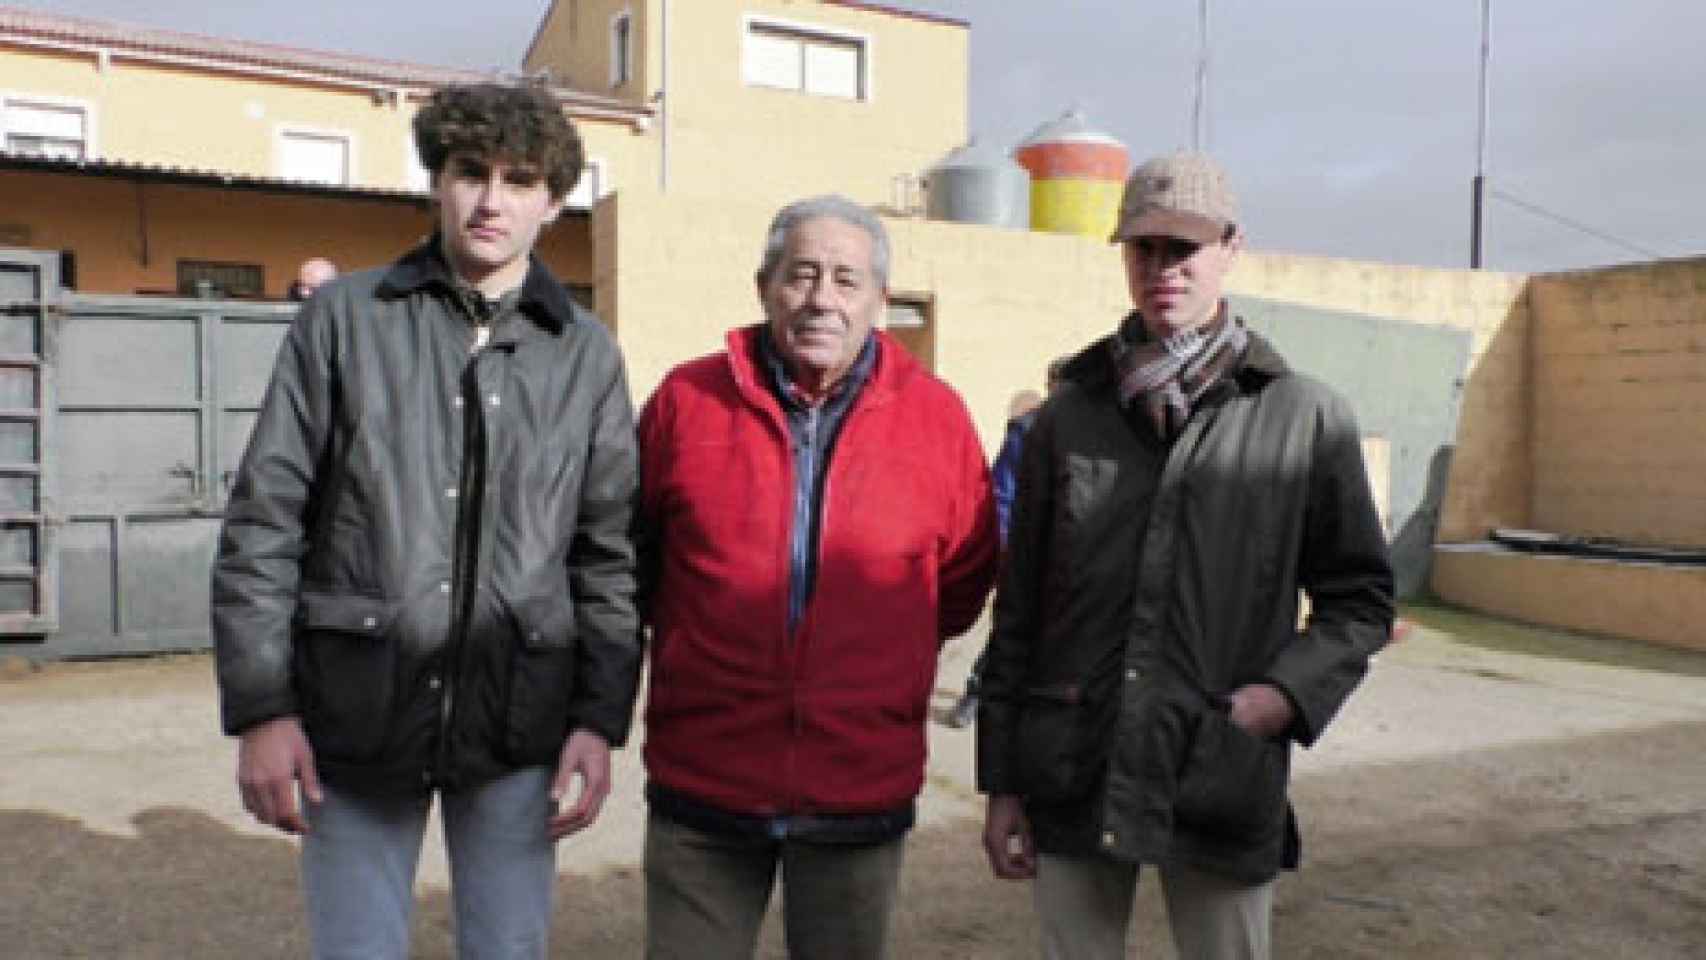 Eladio vegas flanqueado por los novilleros Eloy Álvarez y Diego Mateos